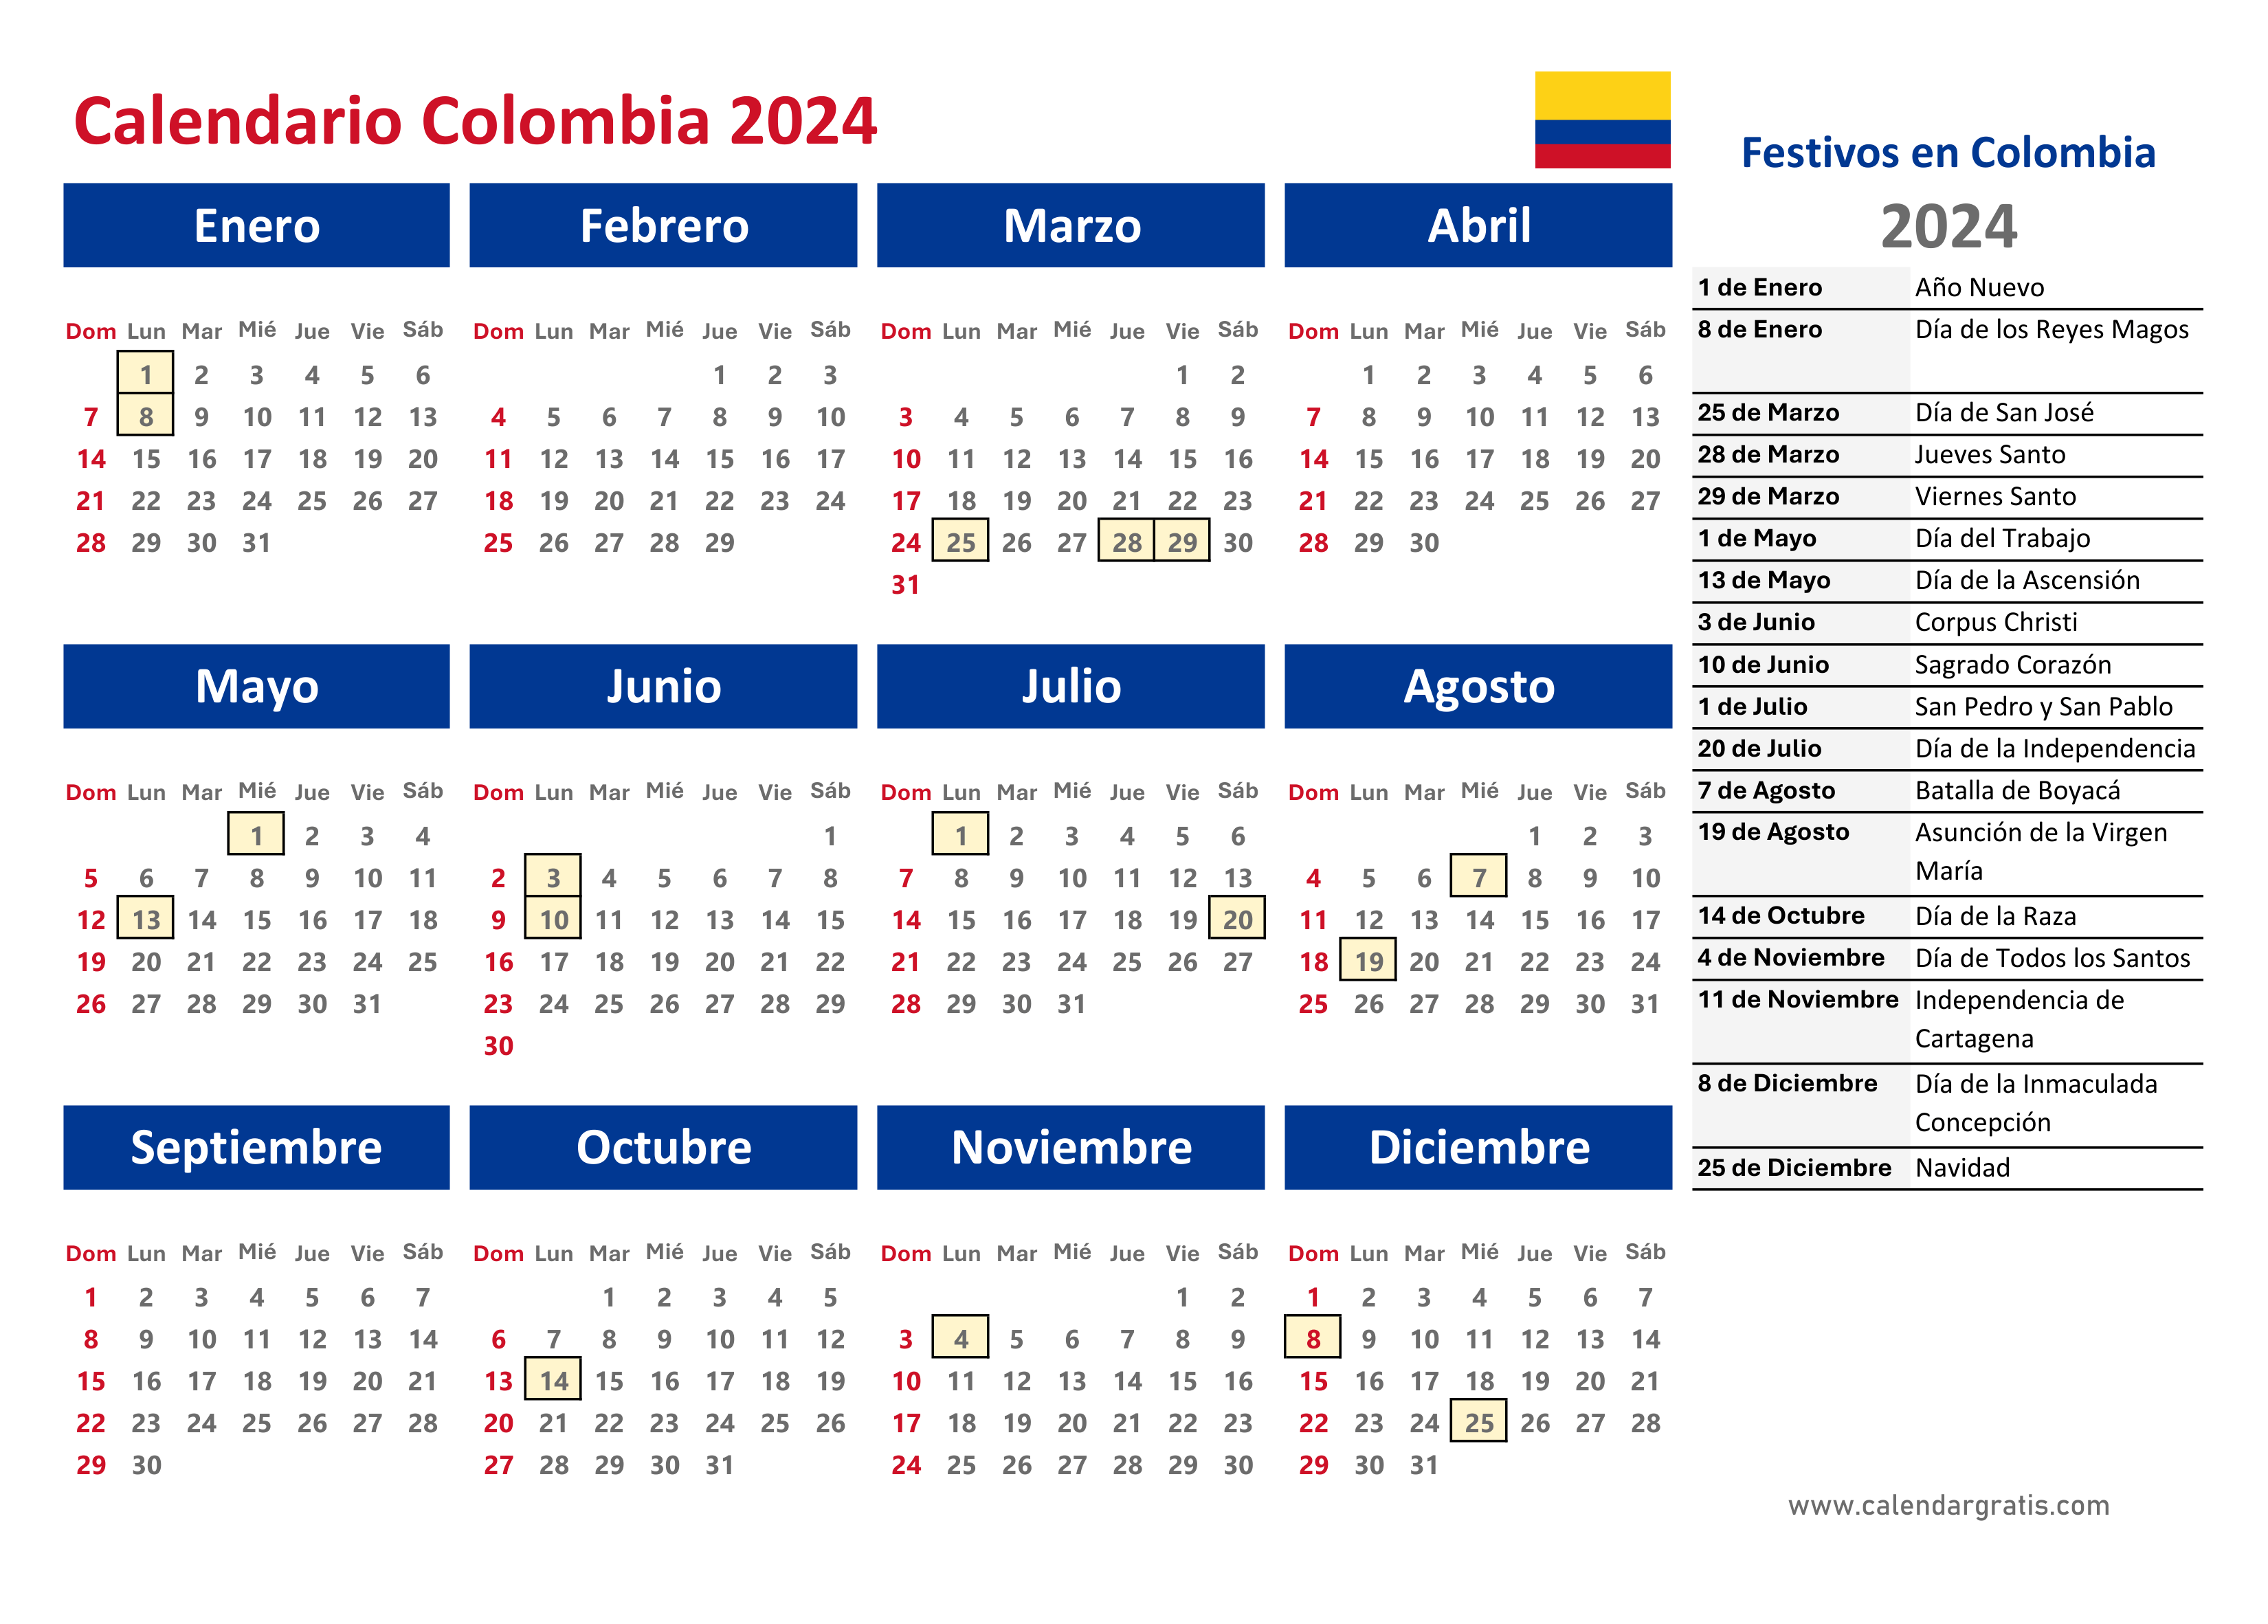 Calendario 2024 Colombia con Festivos de diseño hermoso, mostrando una lista completa de festivos de Colombia para el 2024 en el lado derecho del calendario.